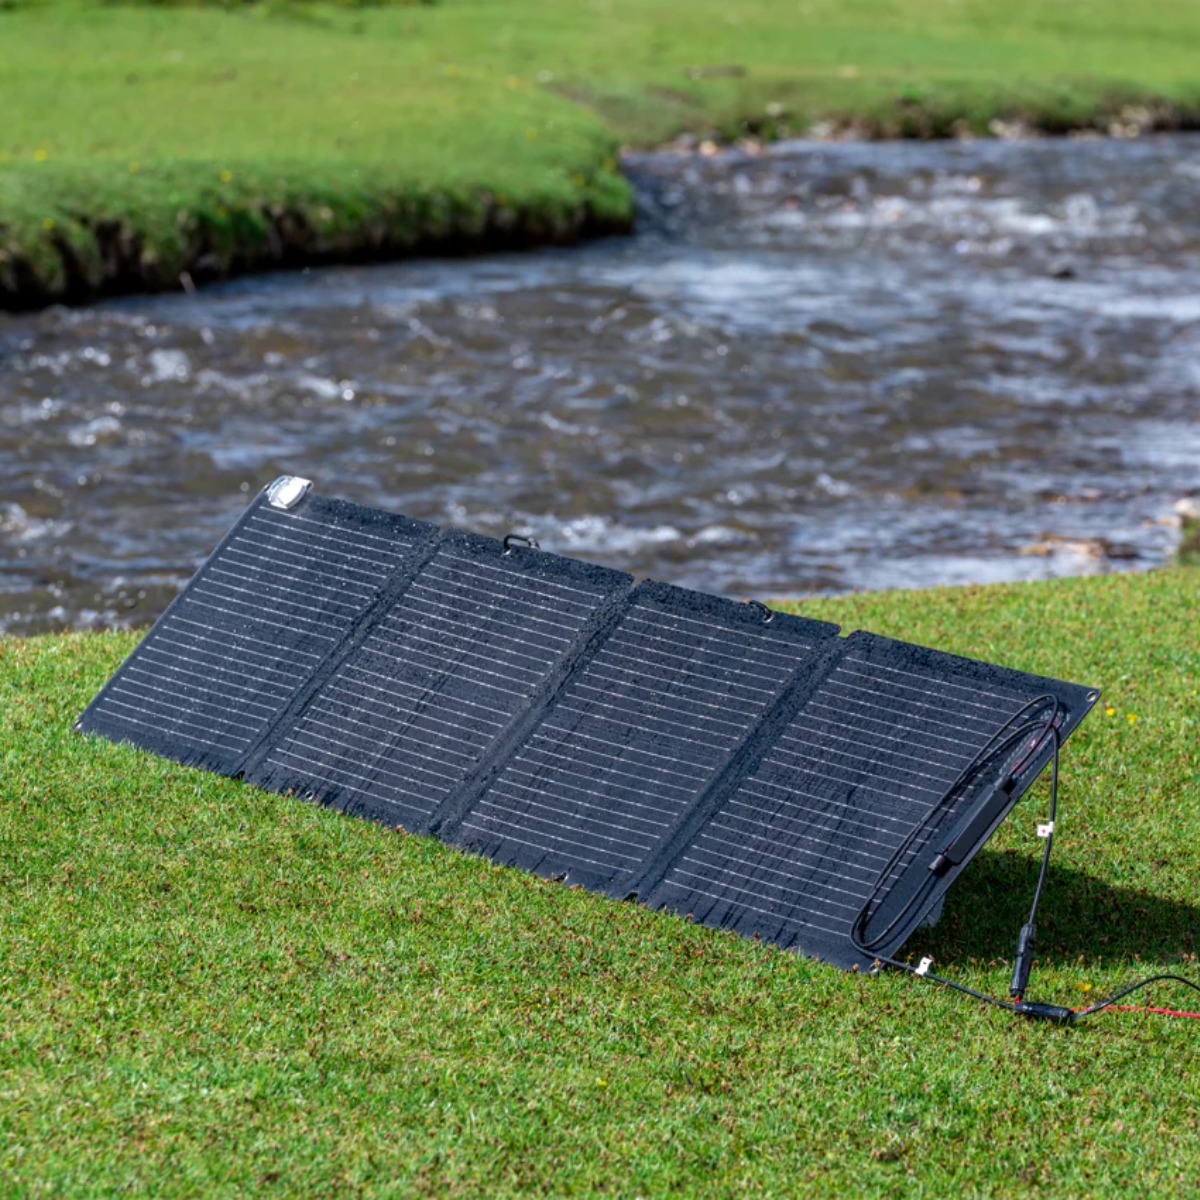 EcoFlow 110W 太阳能电池板